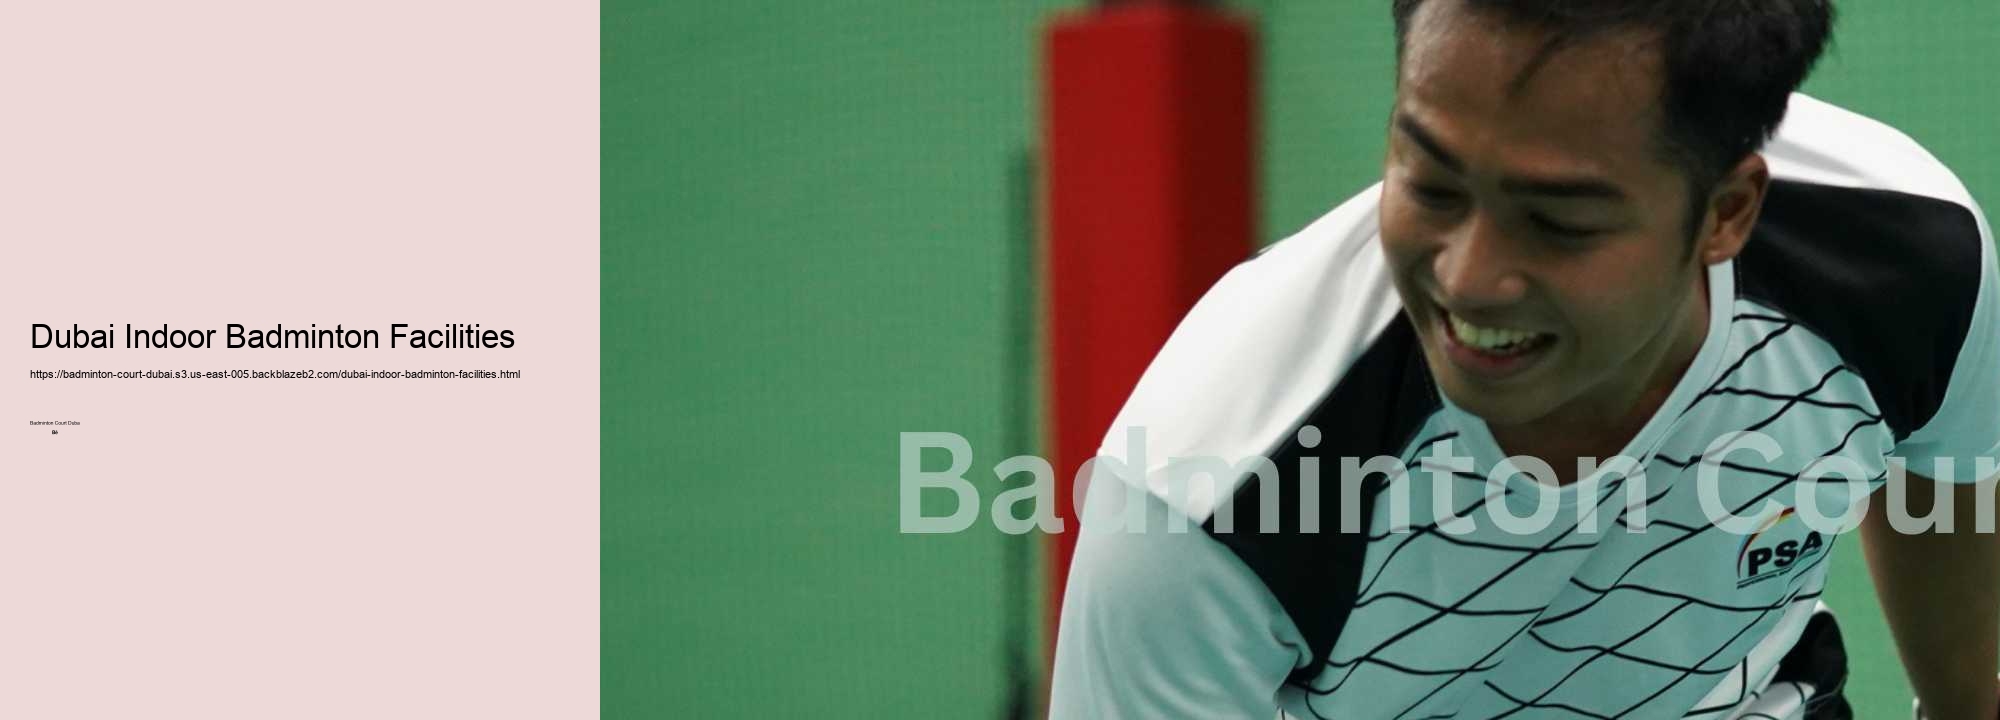 Dubai Indoor Badminton Facilities